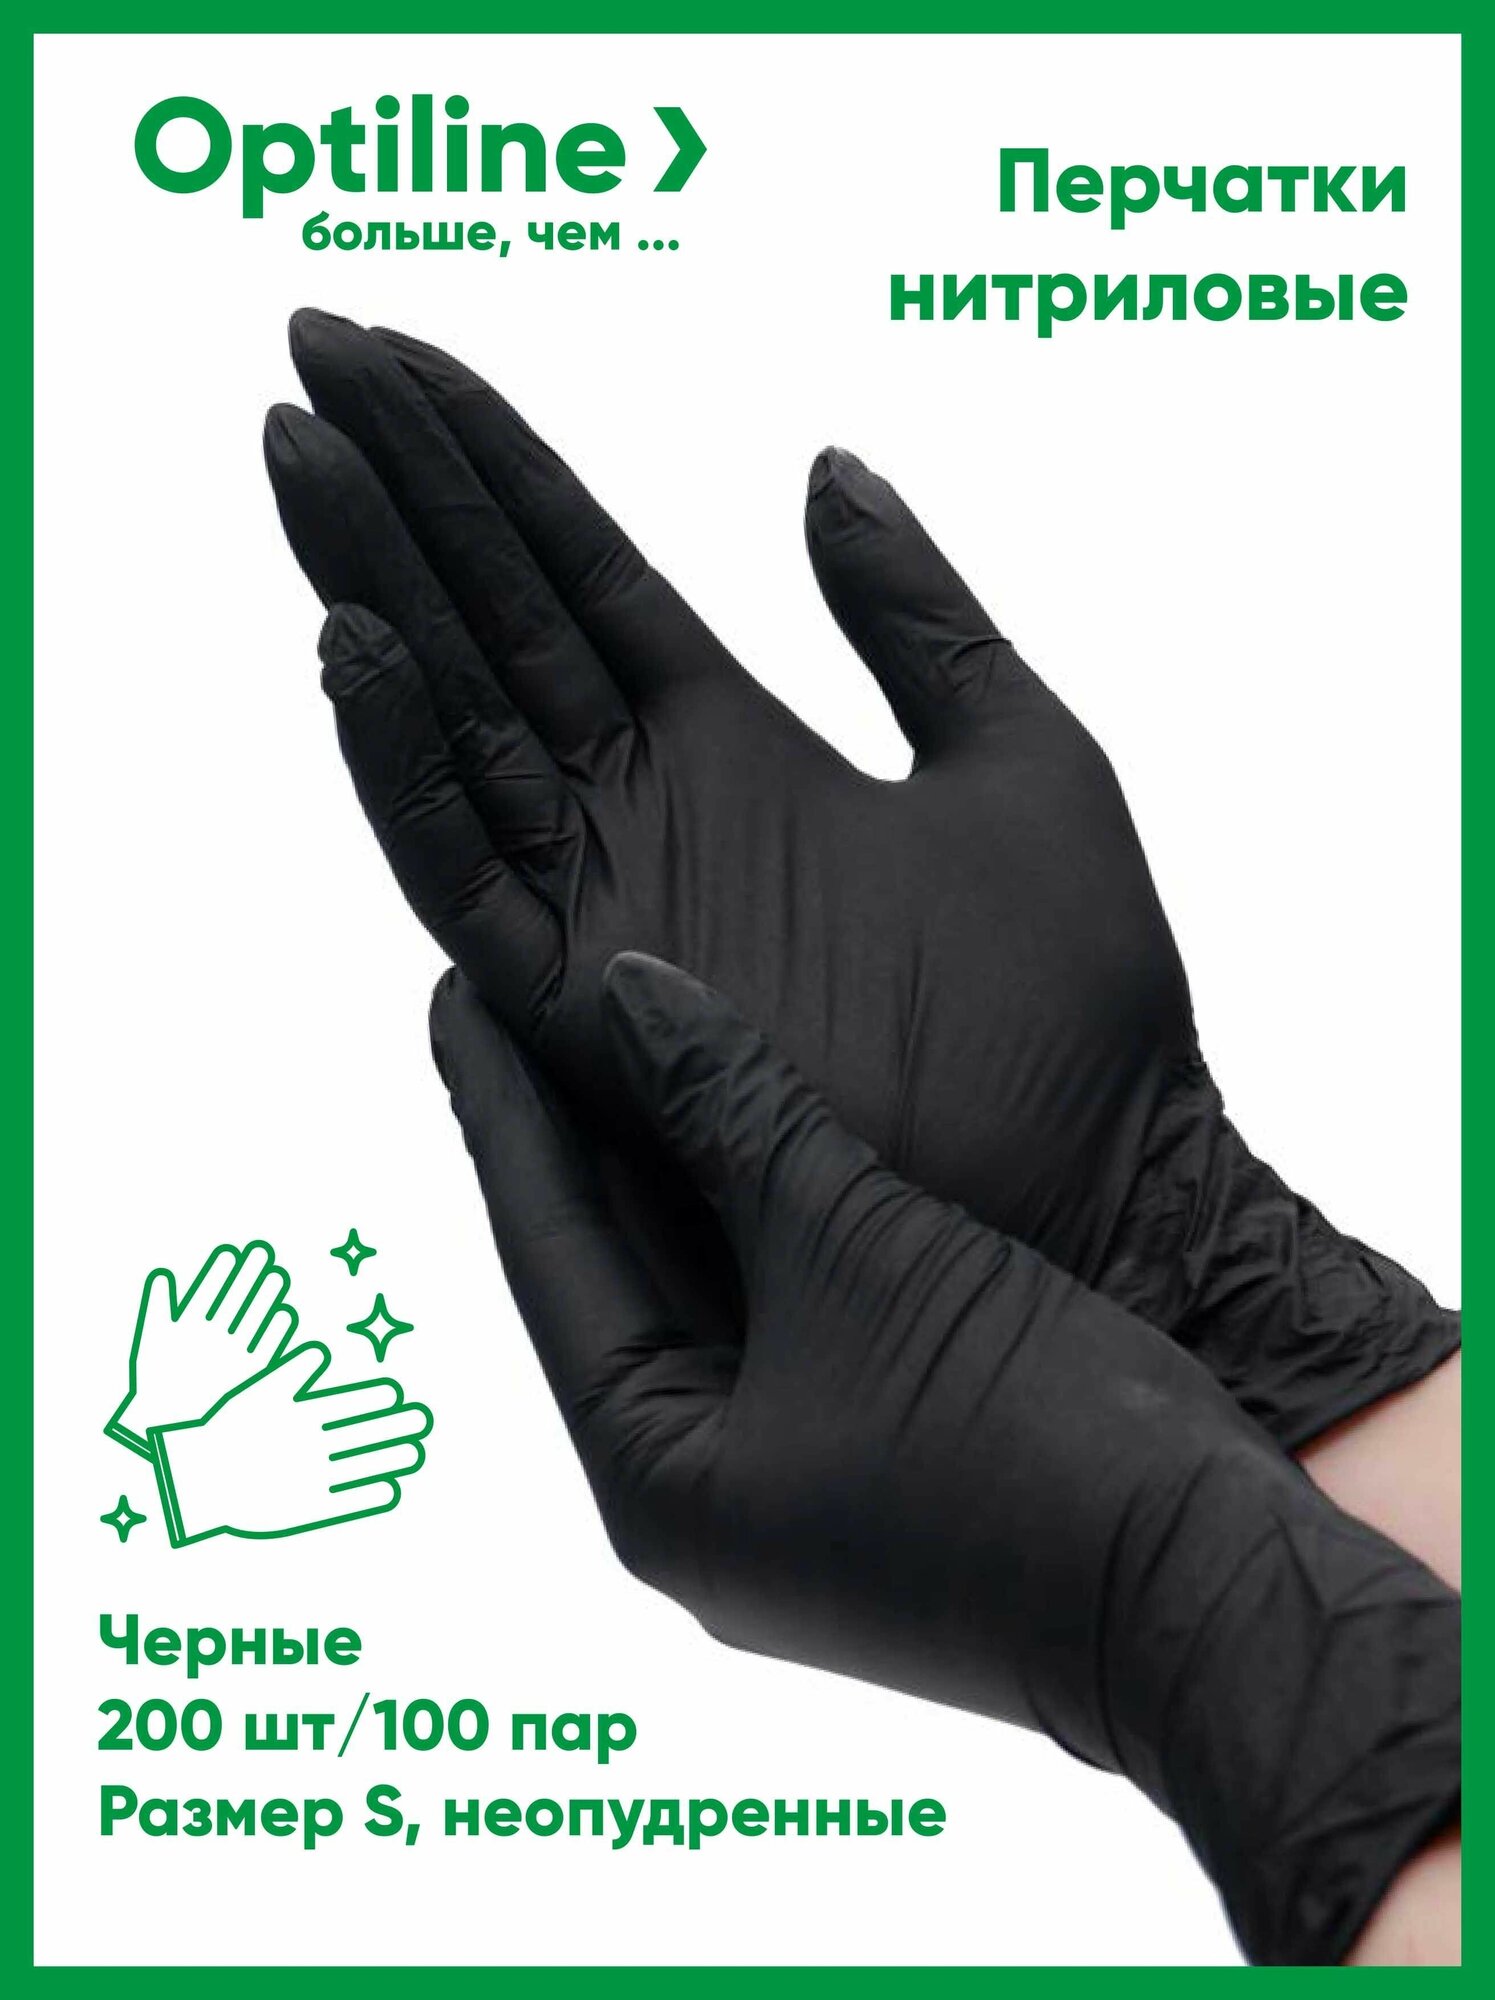 Перчатки одноразовые нитриловые OptiLine черные, размер S, 200 шт/100 пар